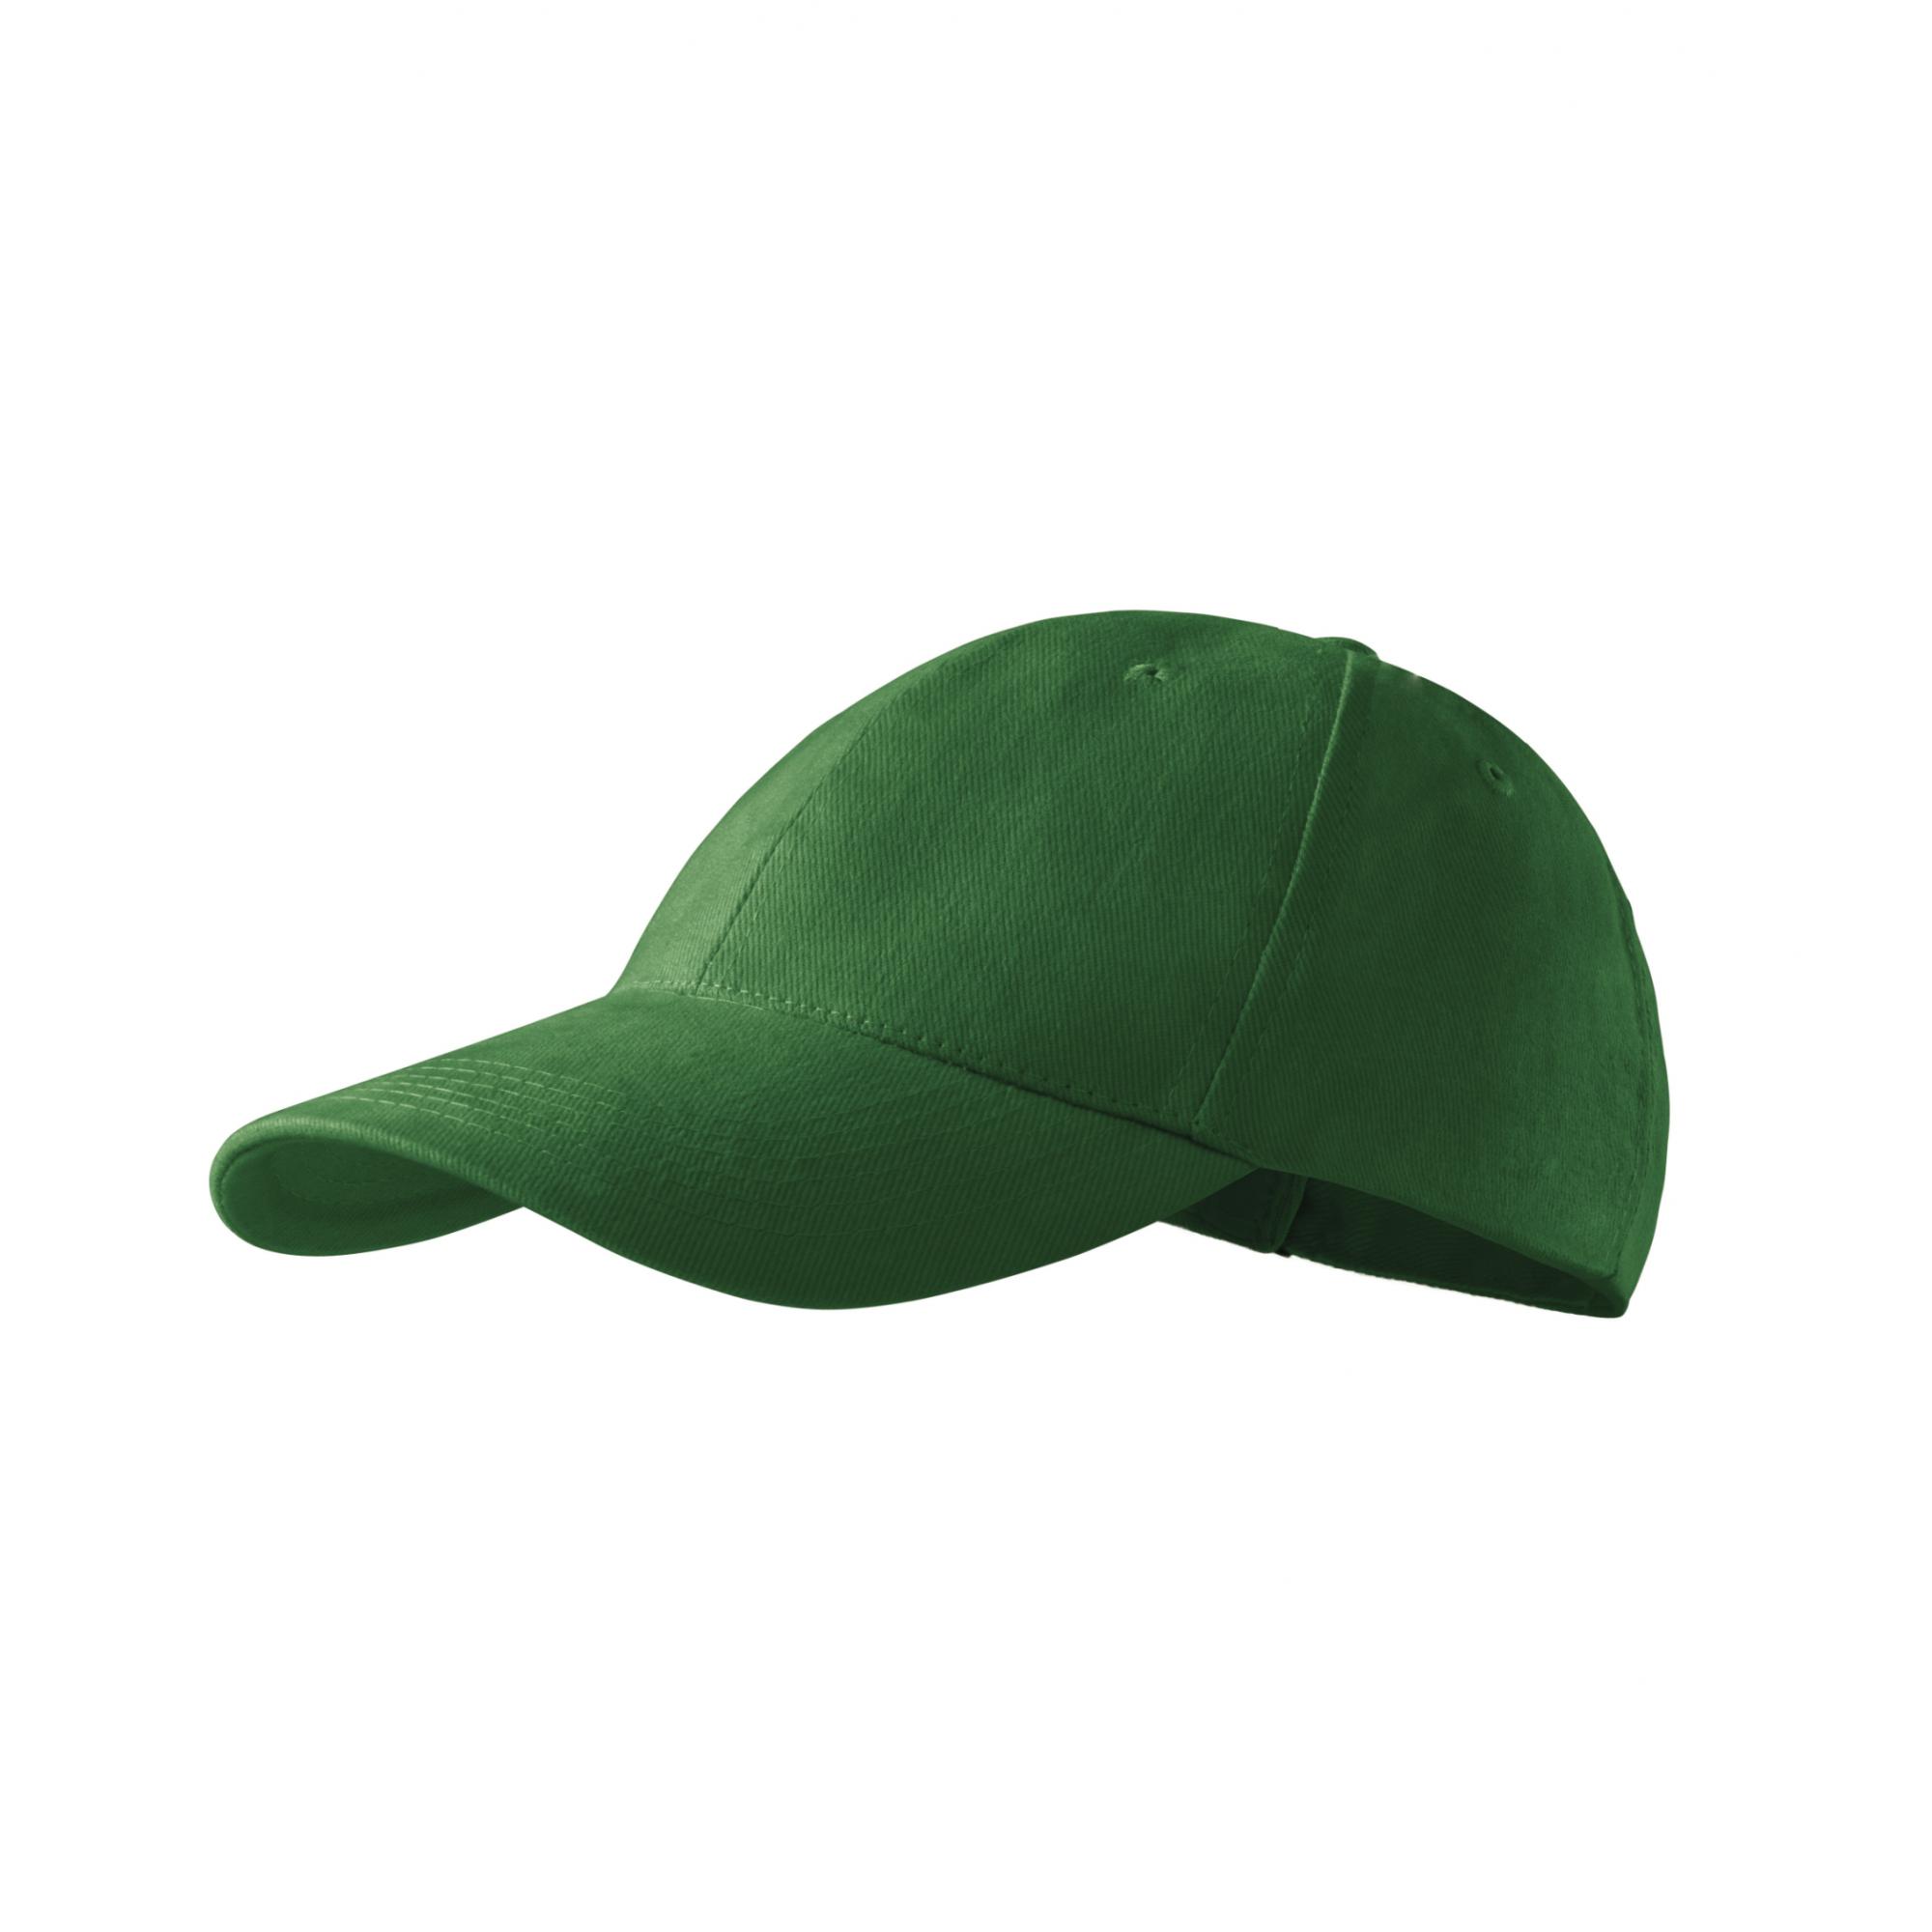 Şapcă unisex 6P 305 Verde sticla Marime universala